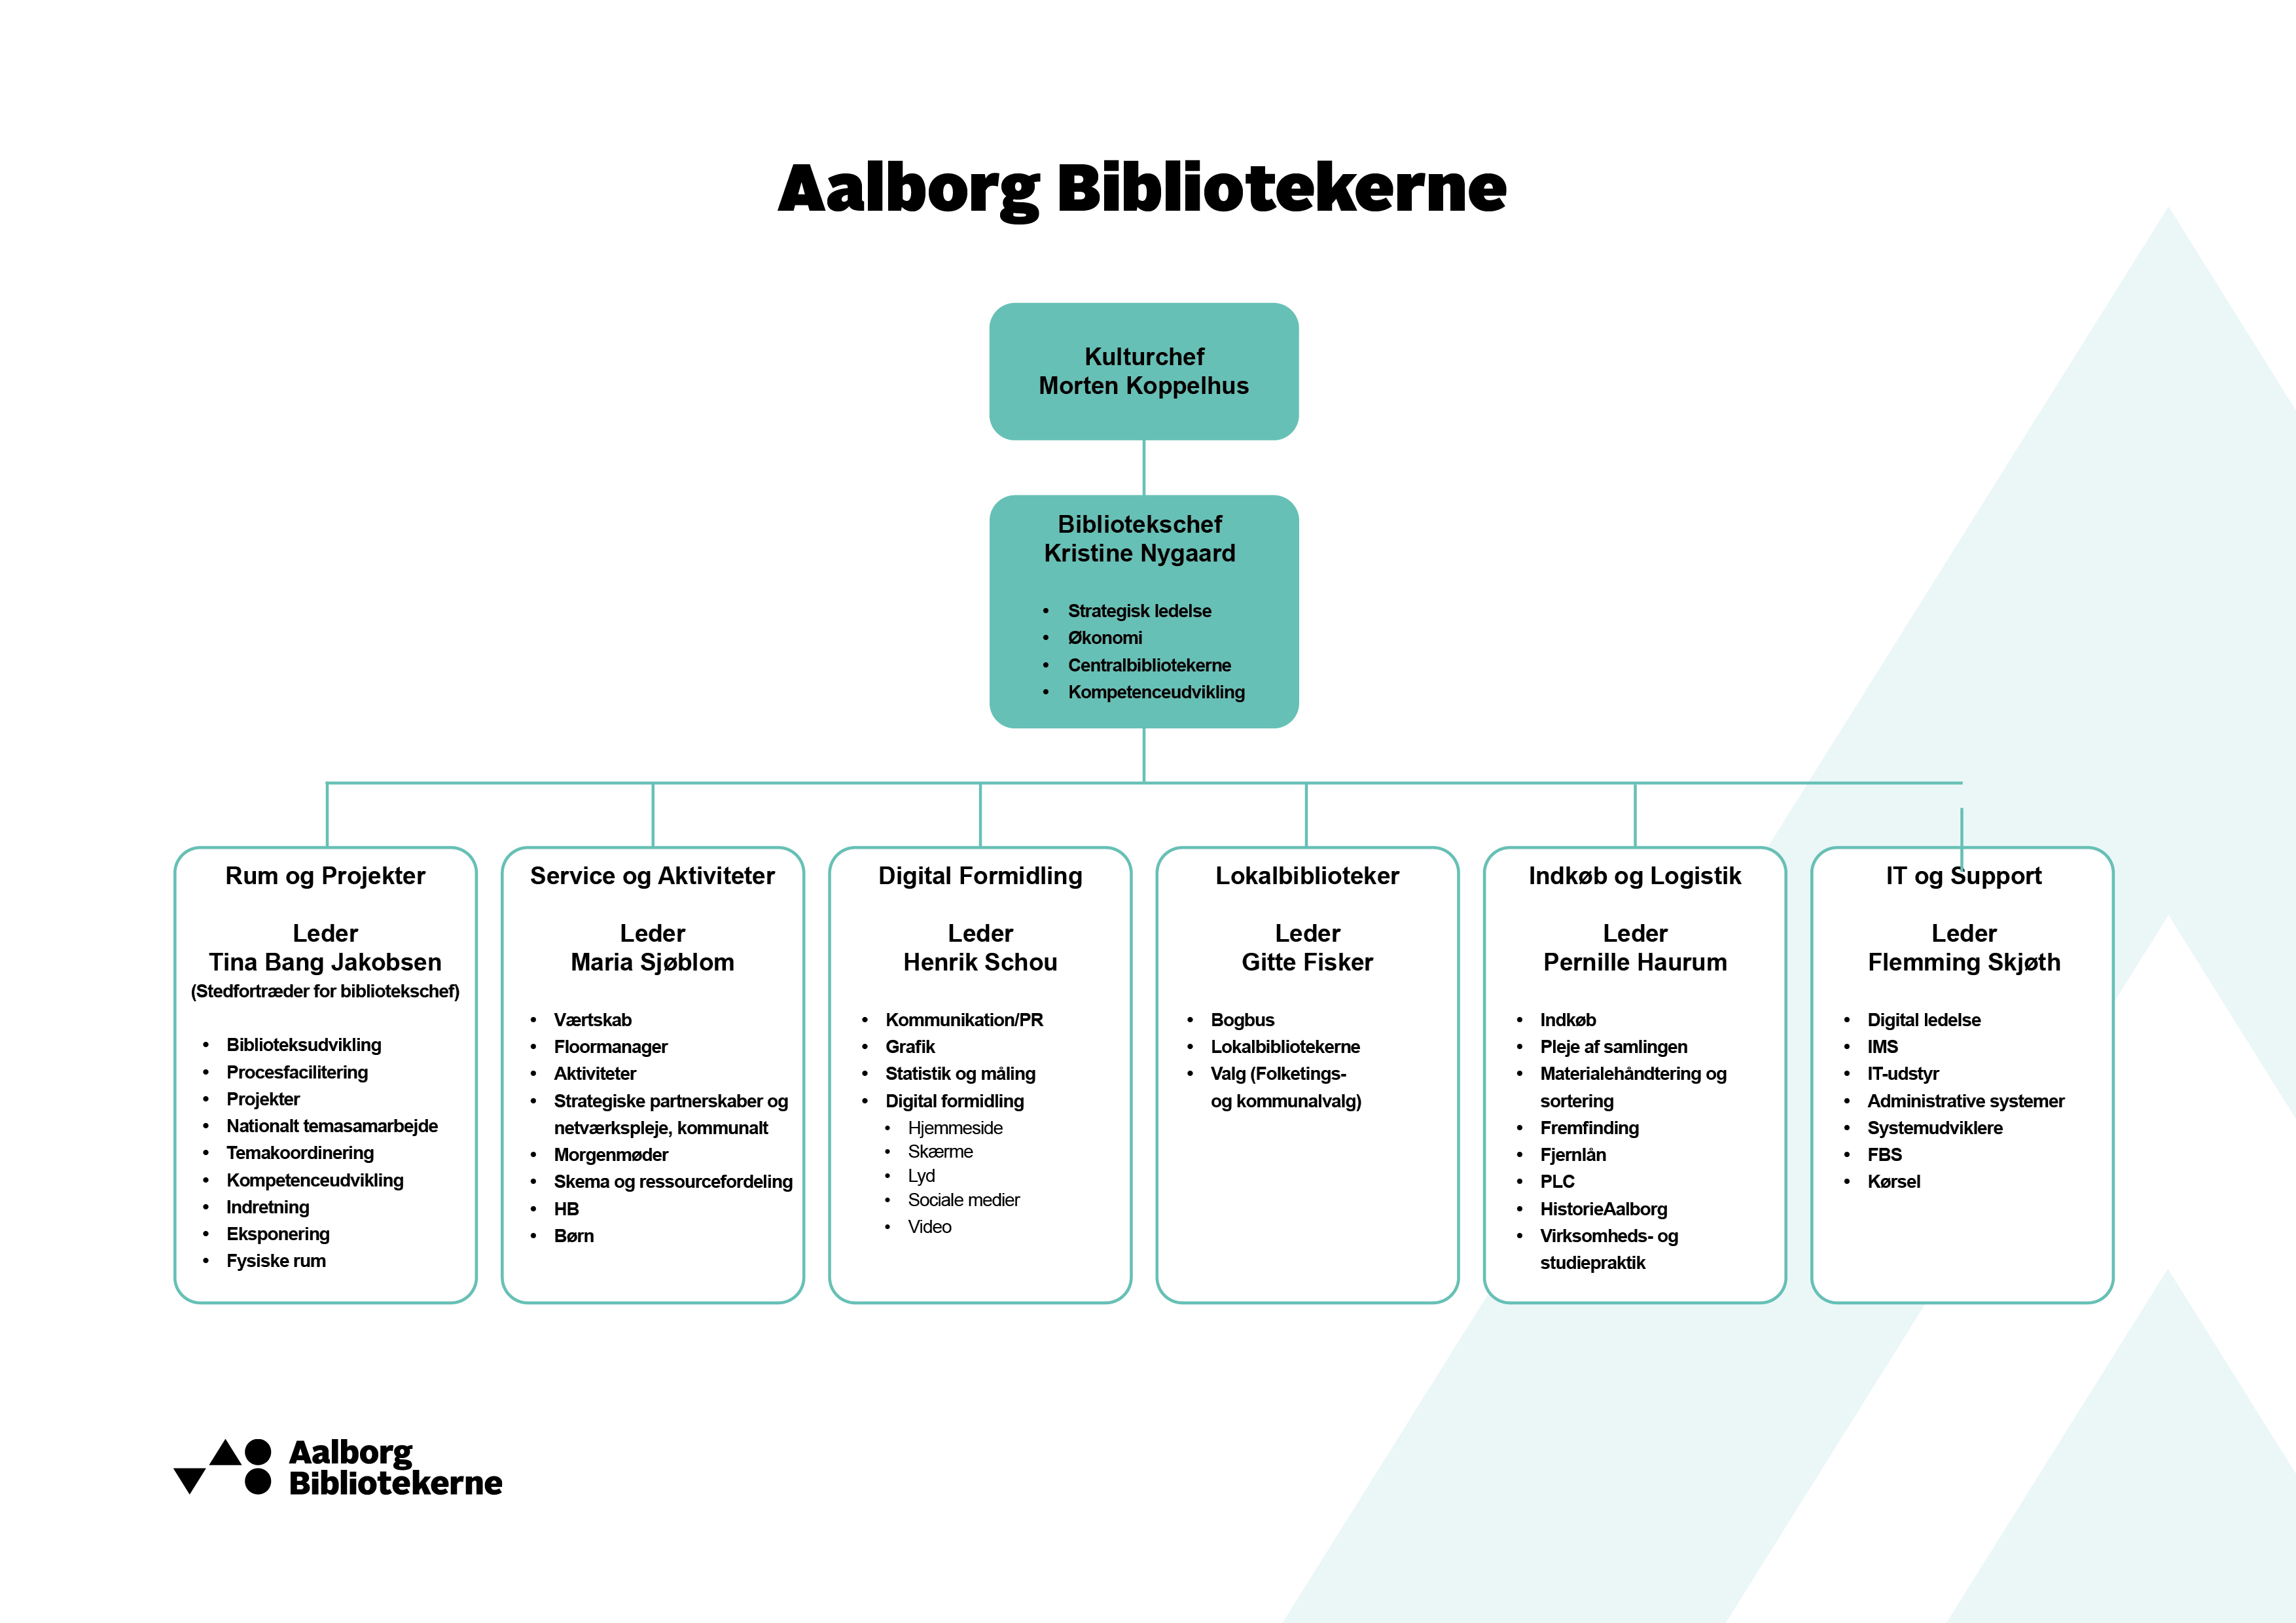 Billede af Aalborg Bibliotekernes organisation med afdelinger og ledere